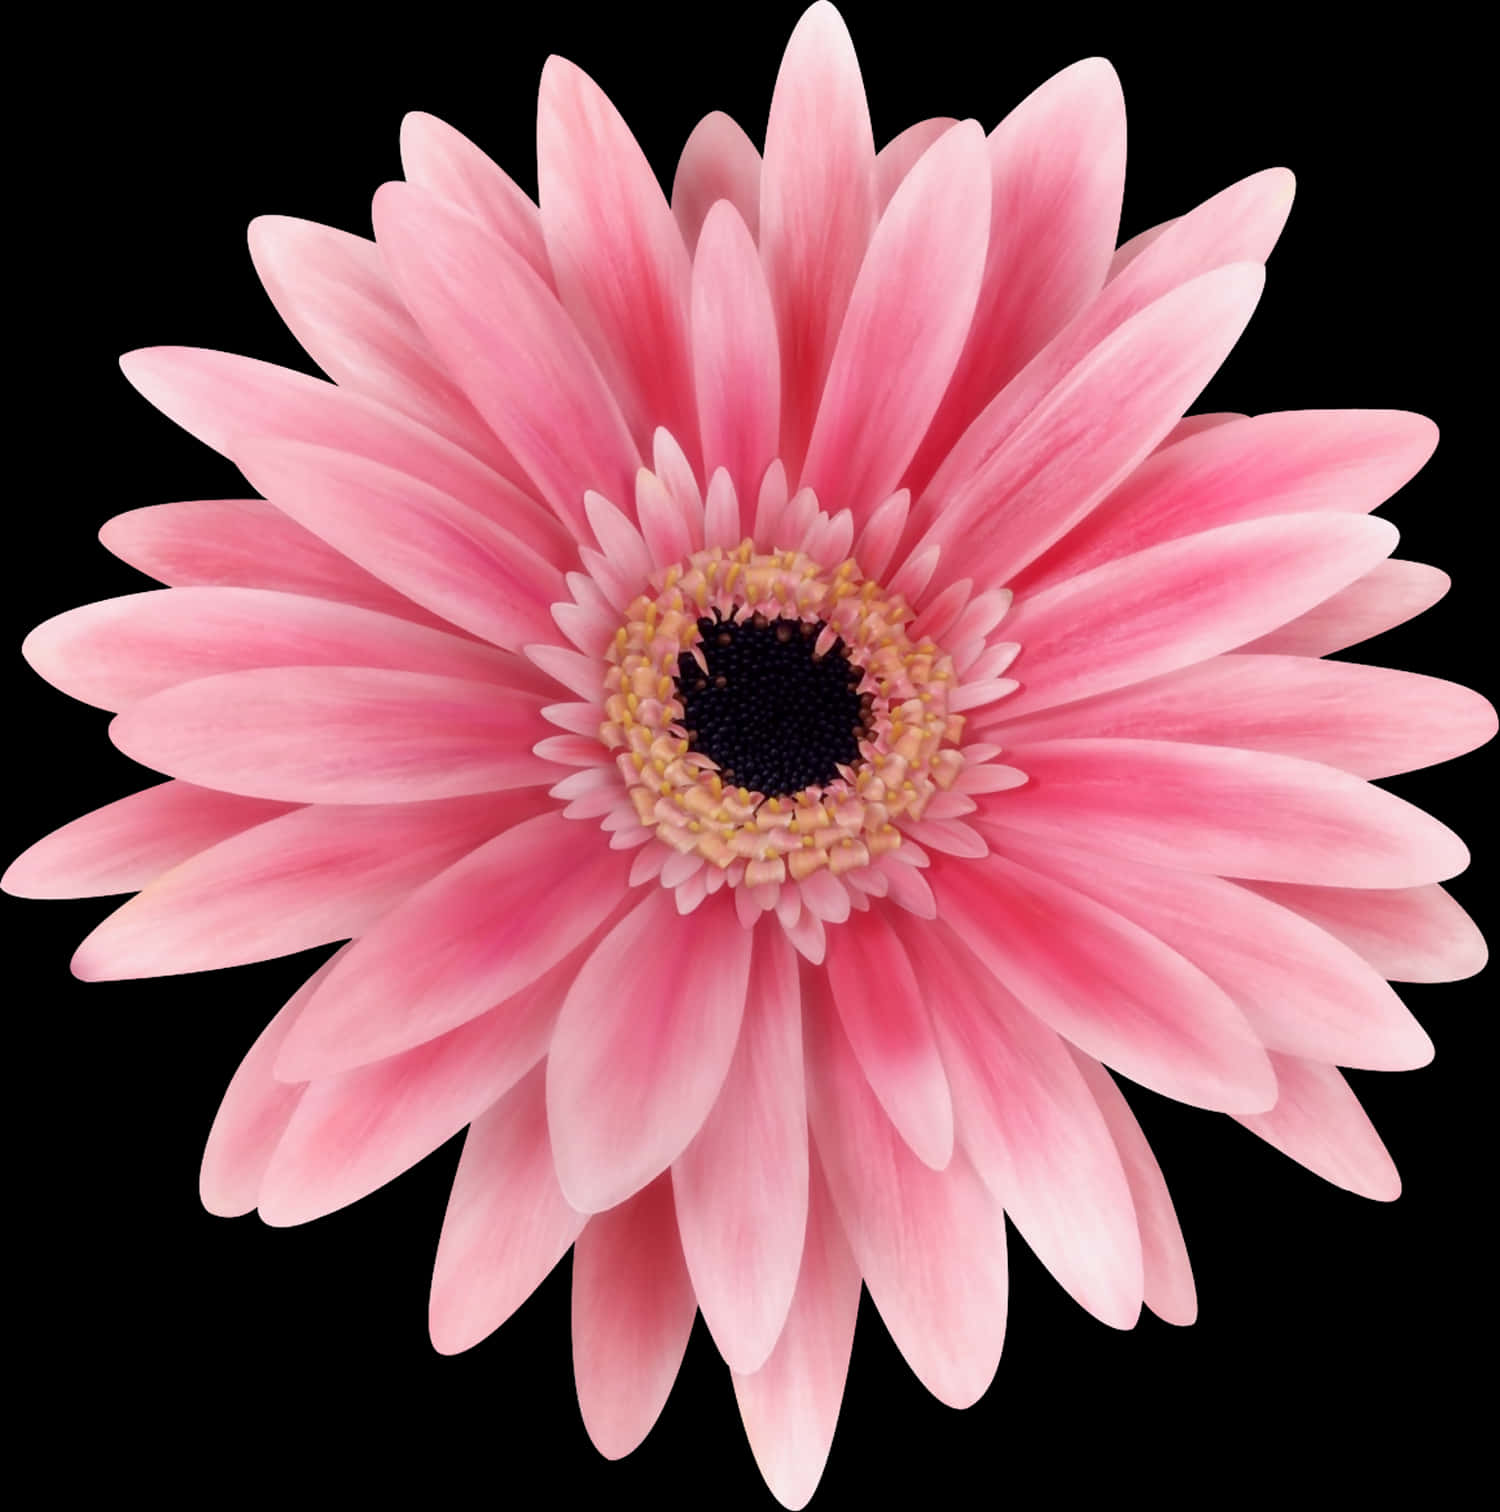 Pink Daisy Flower Closeup PNG